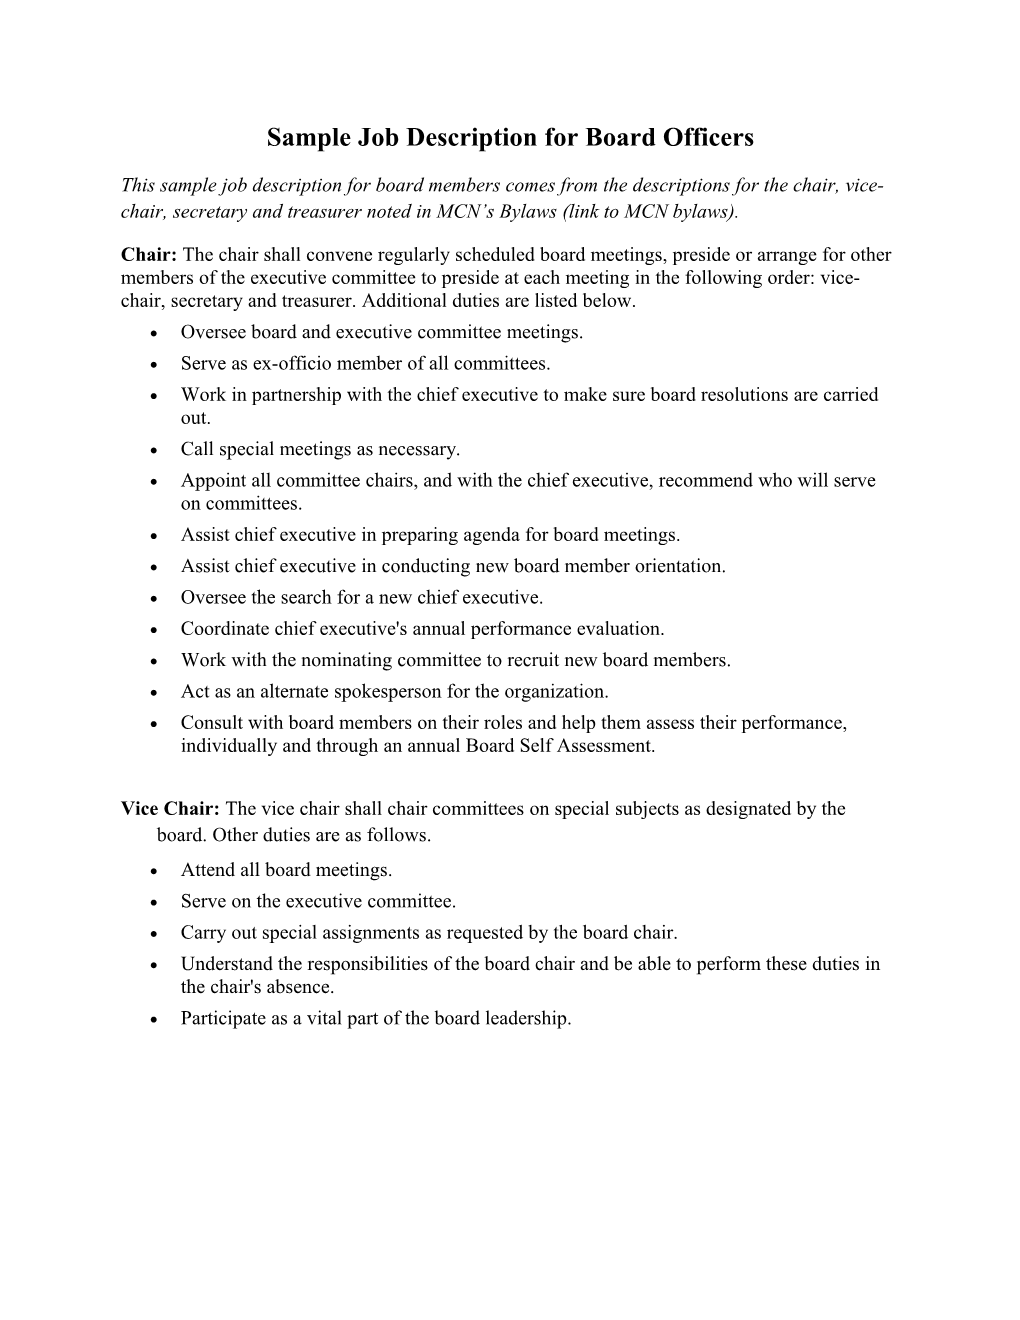 Sample Job Description for Board Officers